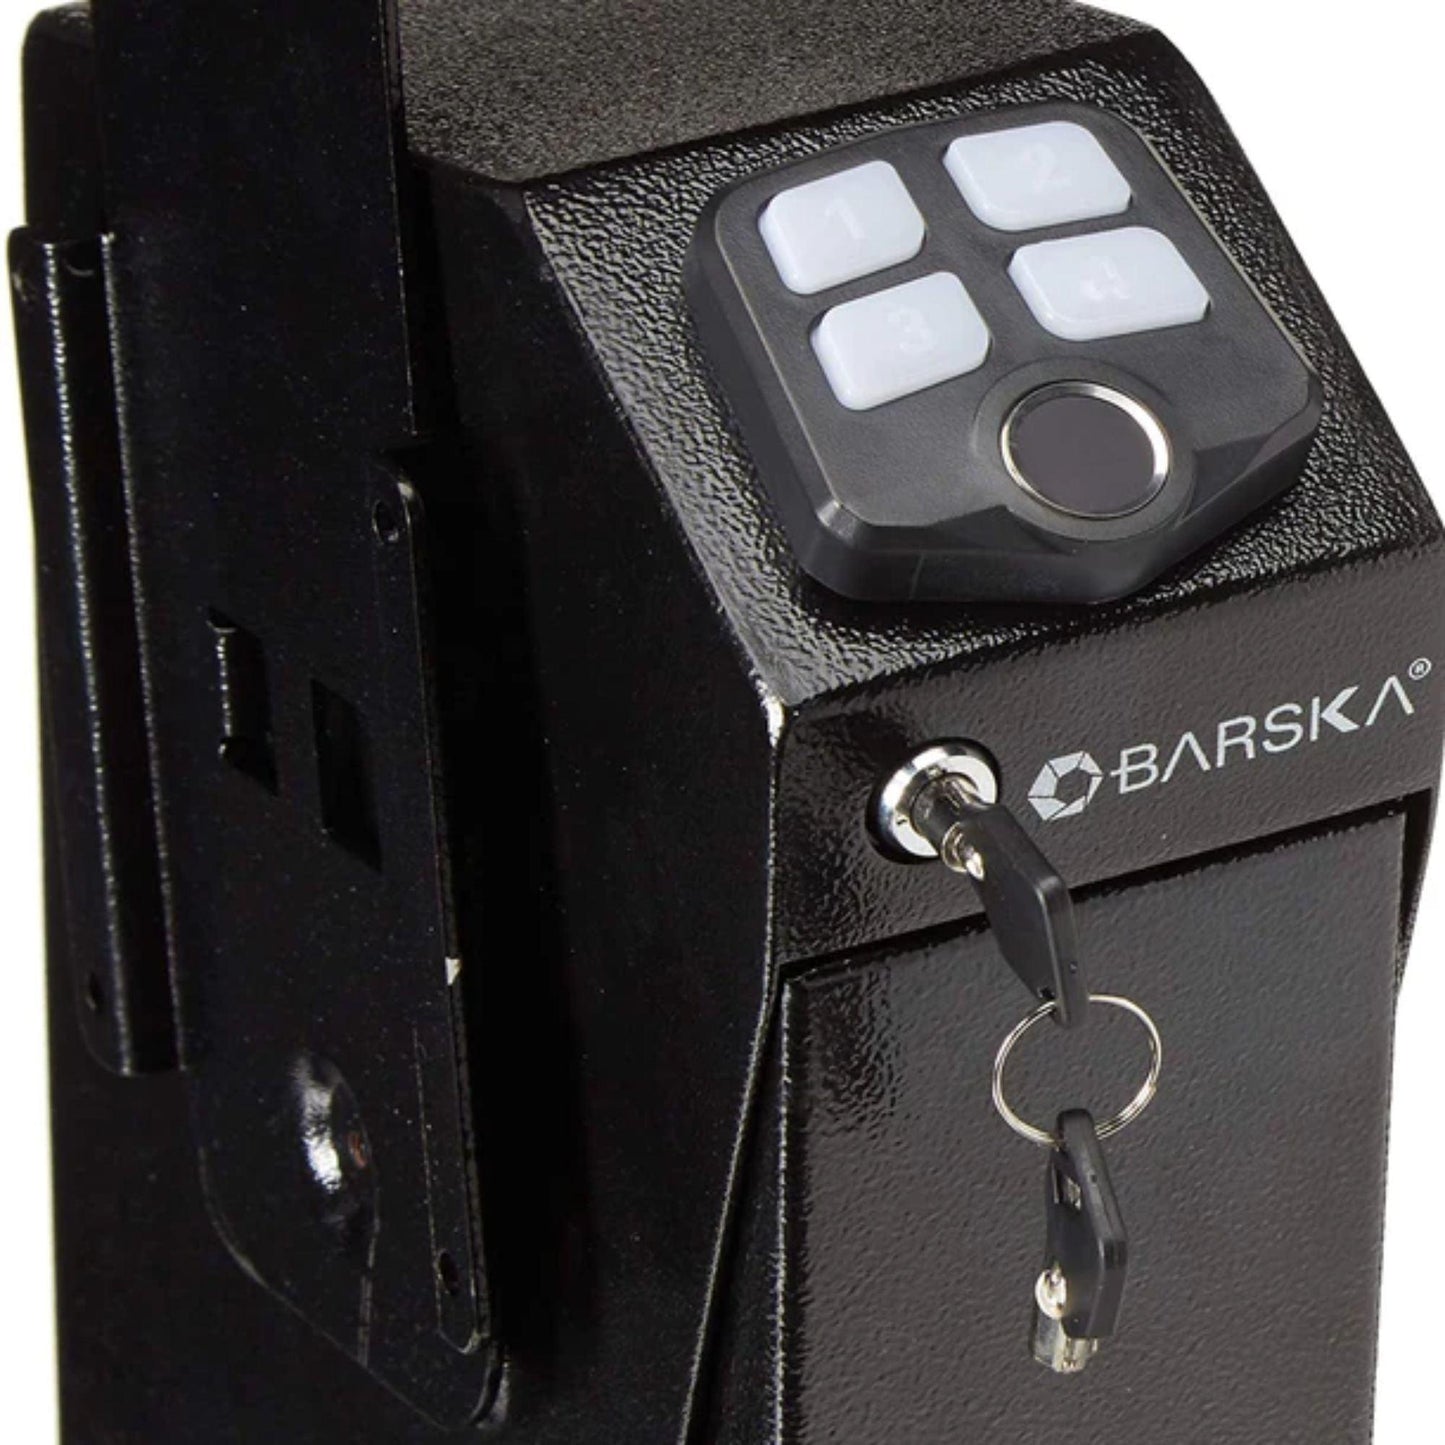 BARSKA Quick Access Handgun Keypad Desk Safe - Silverlight Optics